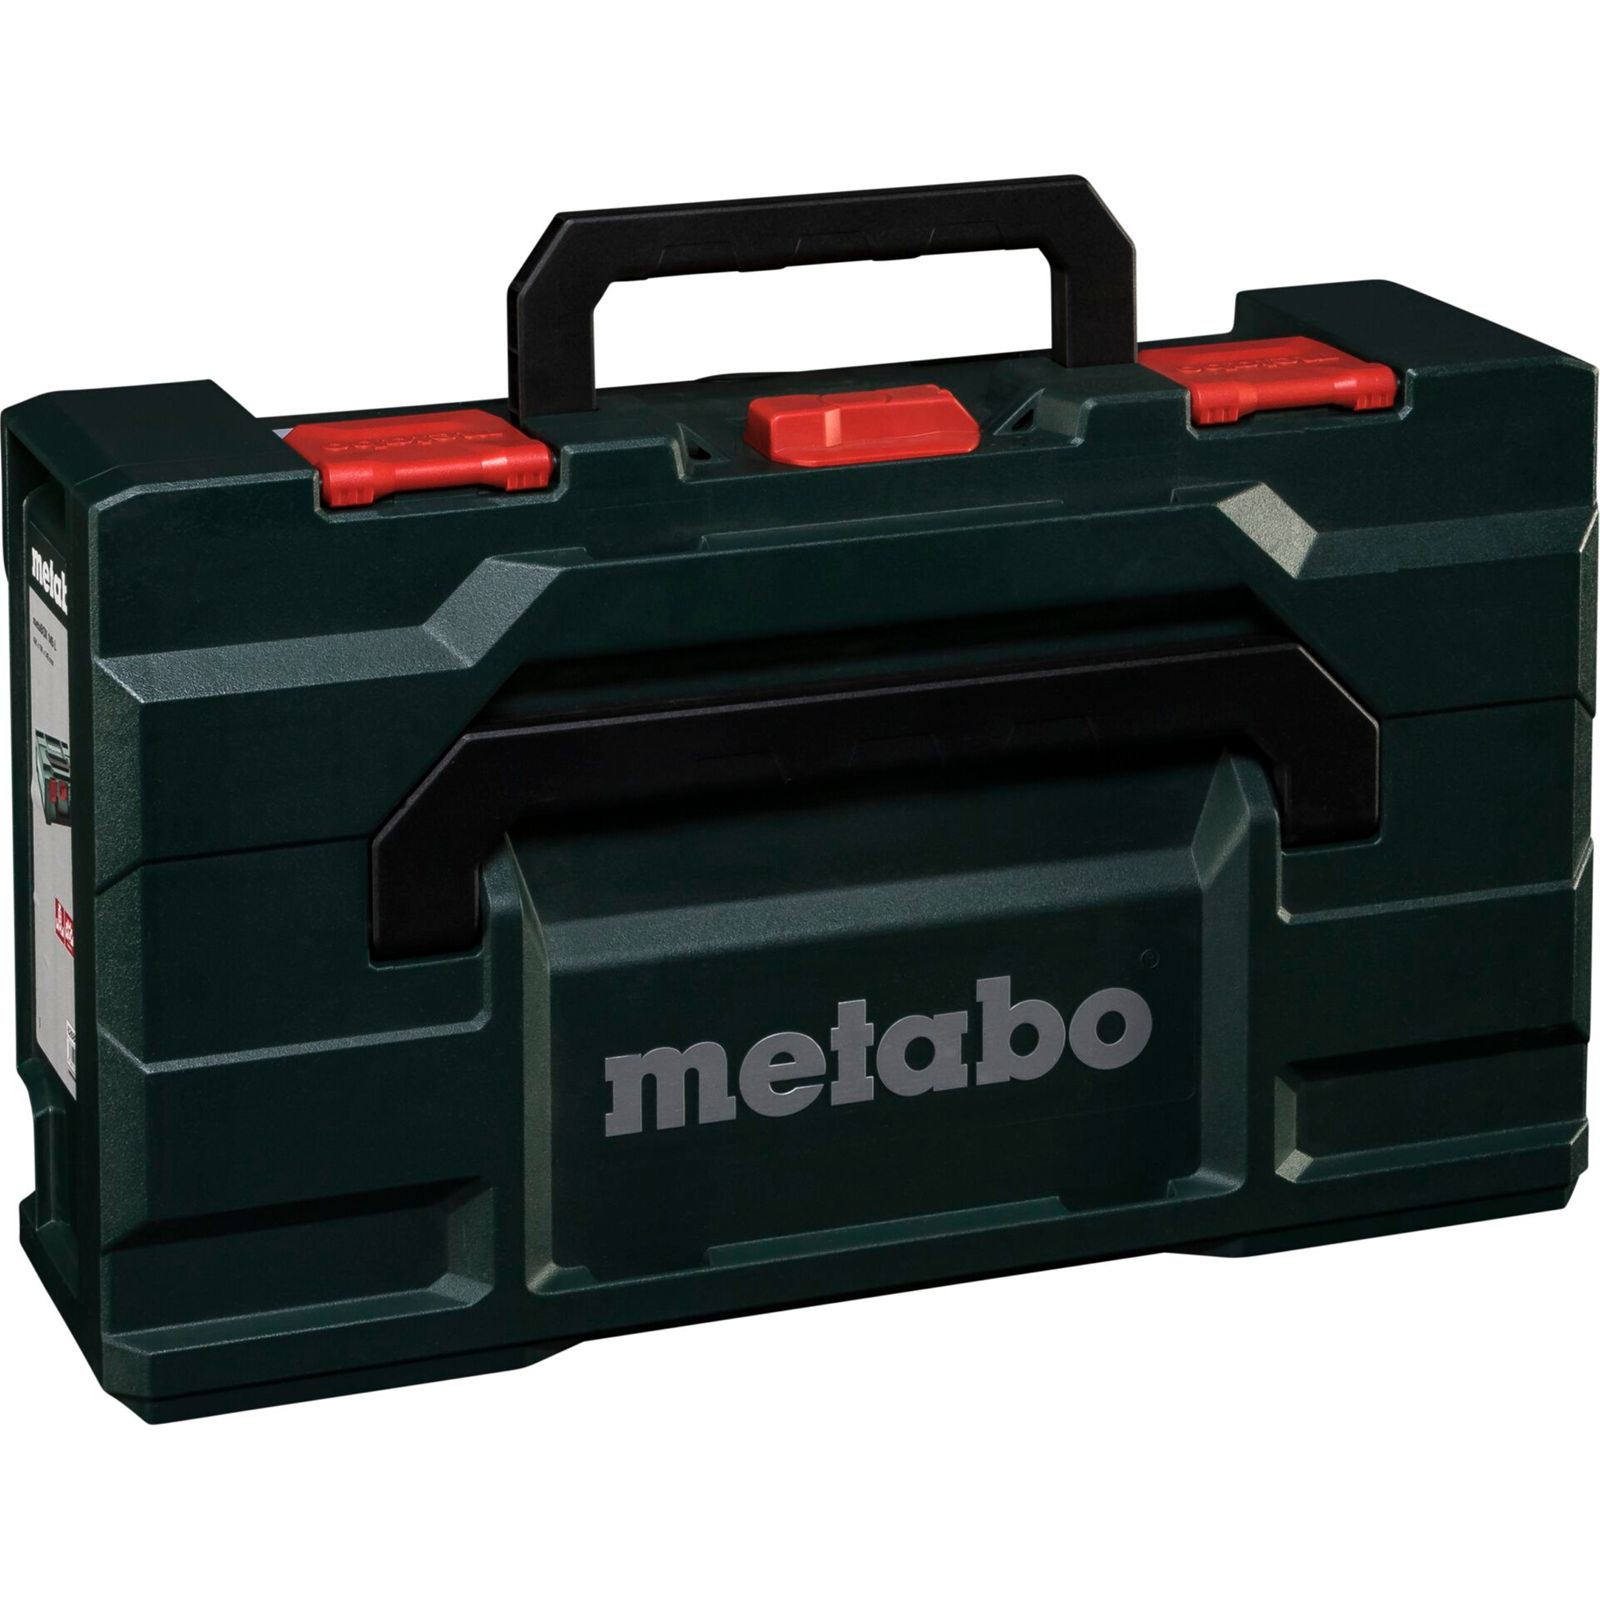 Metabo metaBOX 145 L vuota